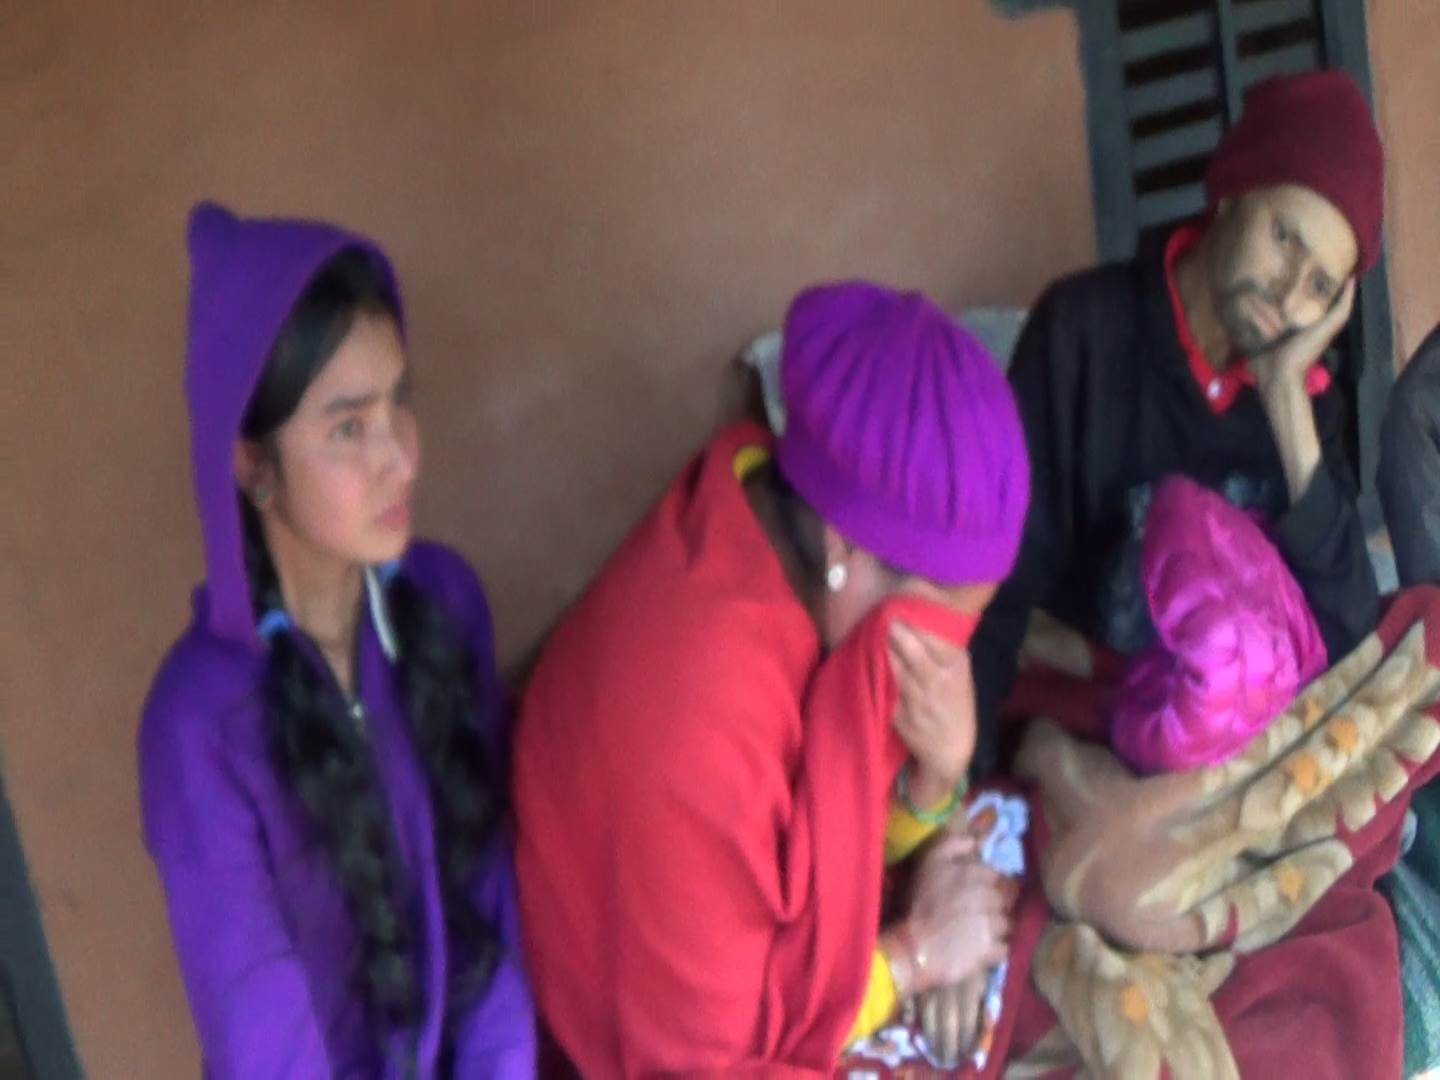 उपचार गर्न नसकेर मृत्यु कुर्दै नेपाली, भाग्यमानी ग्रुपद्धारा सहयोग